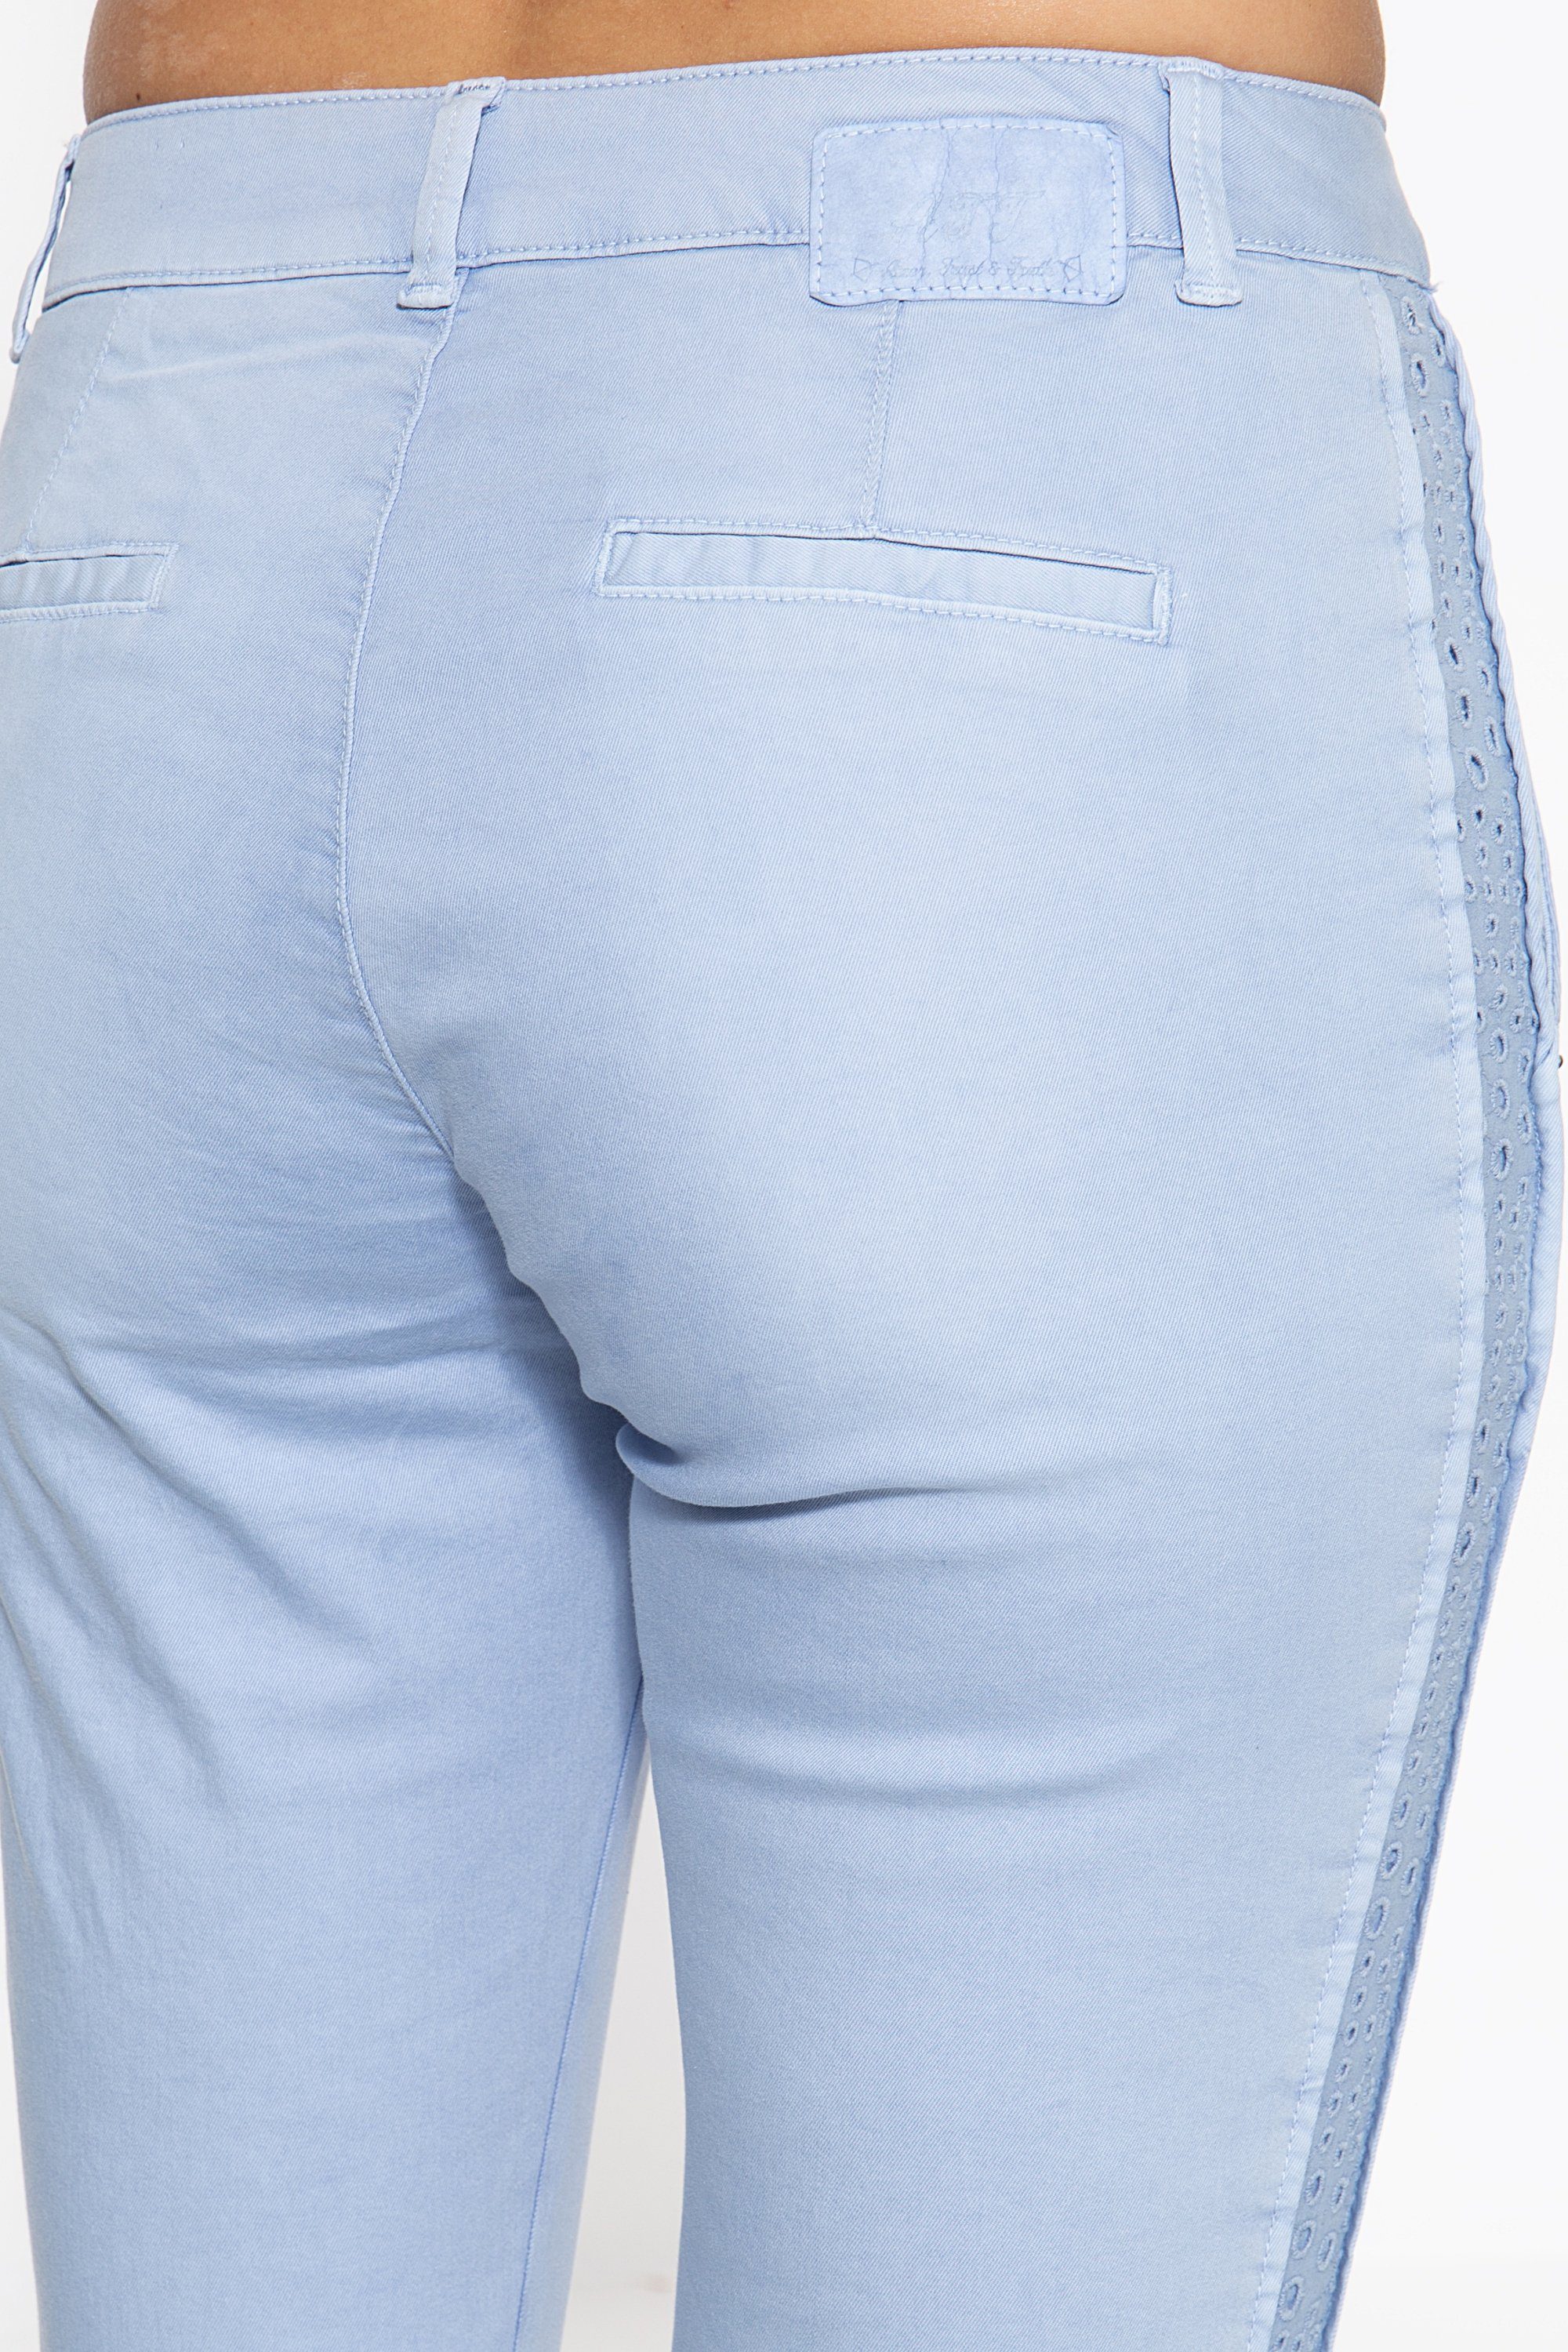 ATT den an Chinohose Emilia Jeans mit Seitennähten hellblau Einsätzen